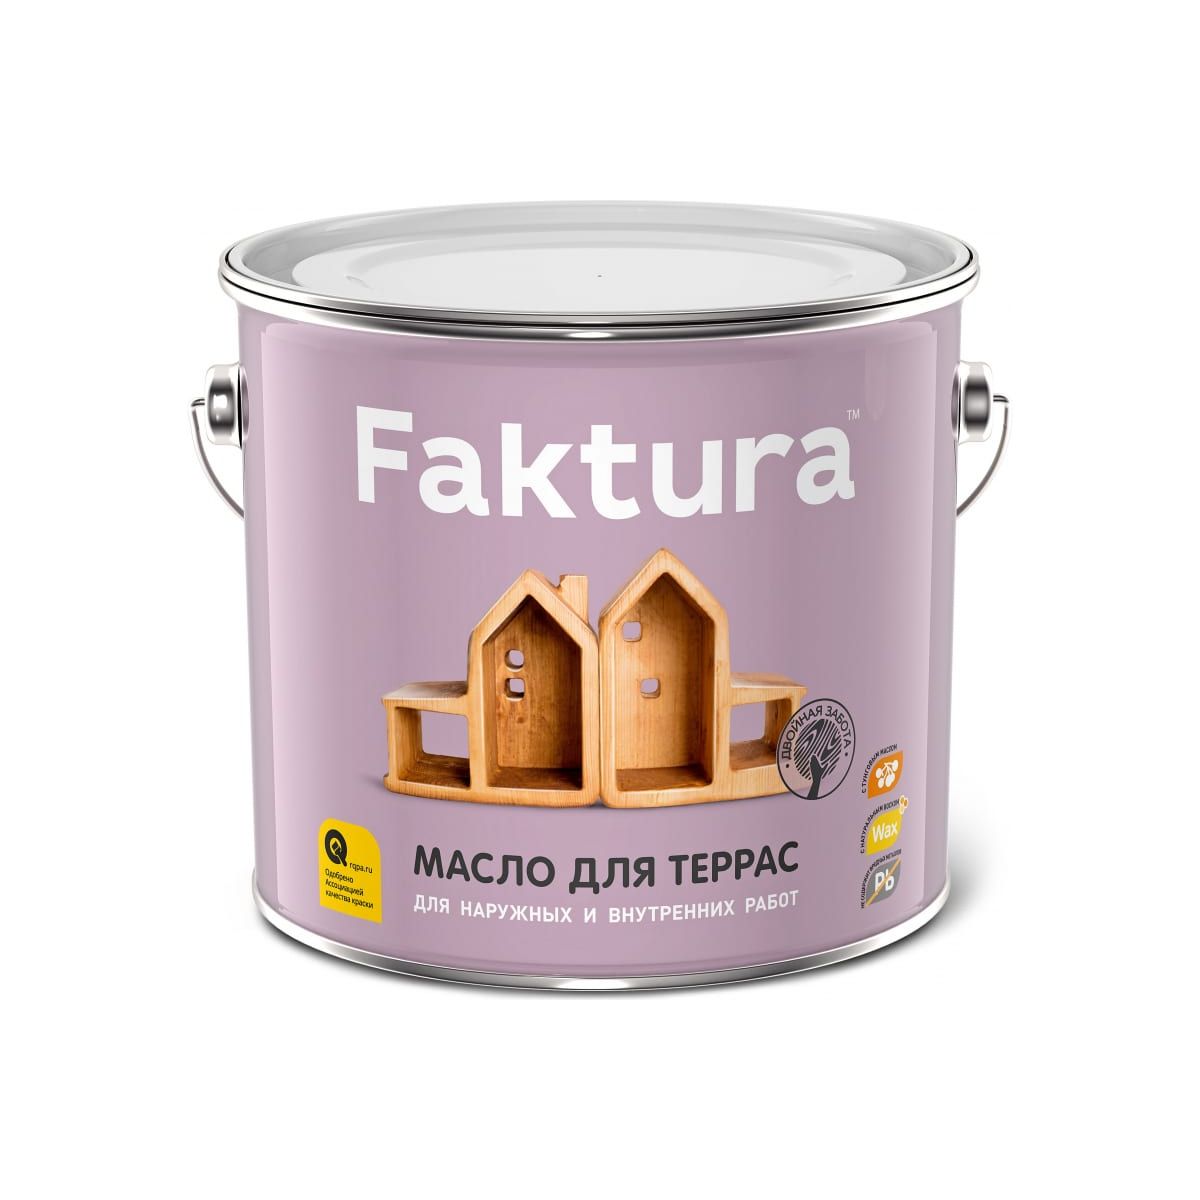 Масло Faktura для террас, 2,7 л масло детское для тела после купания 115мл